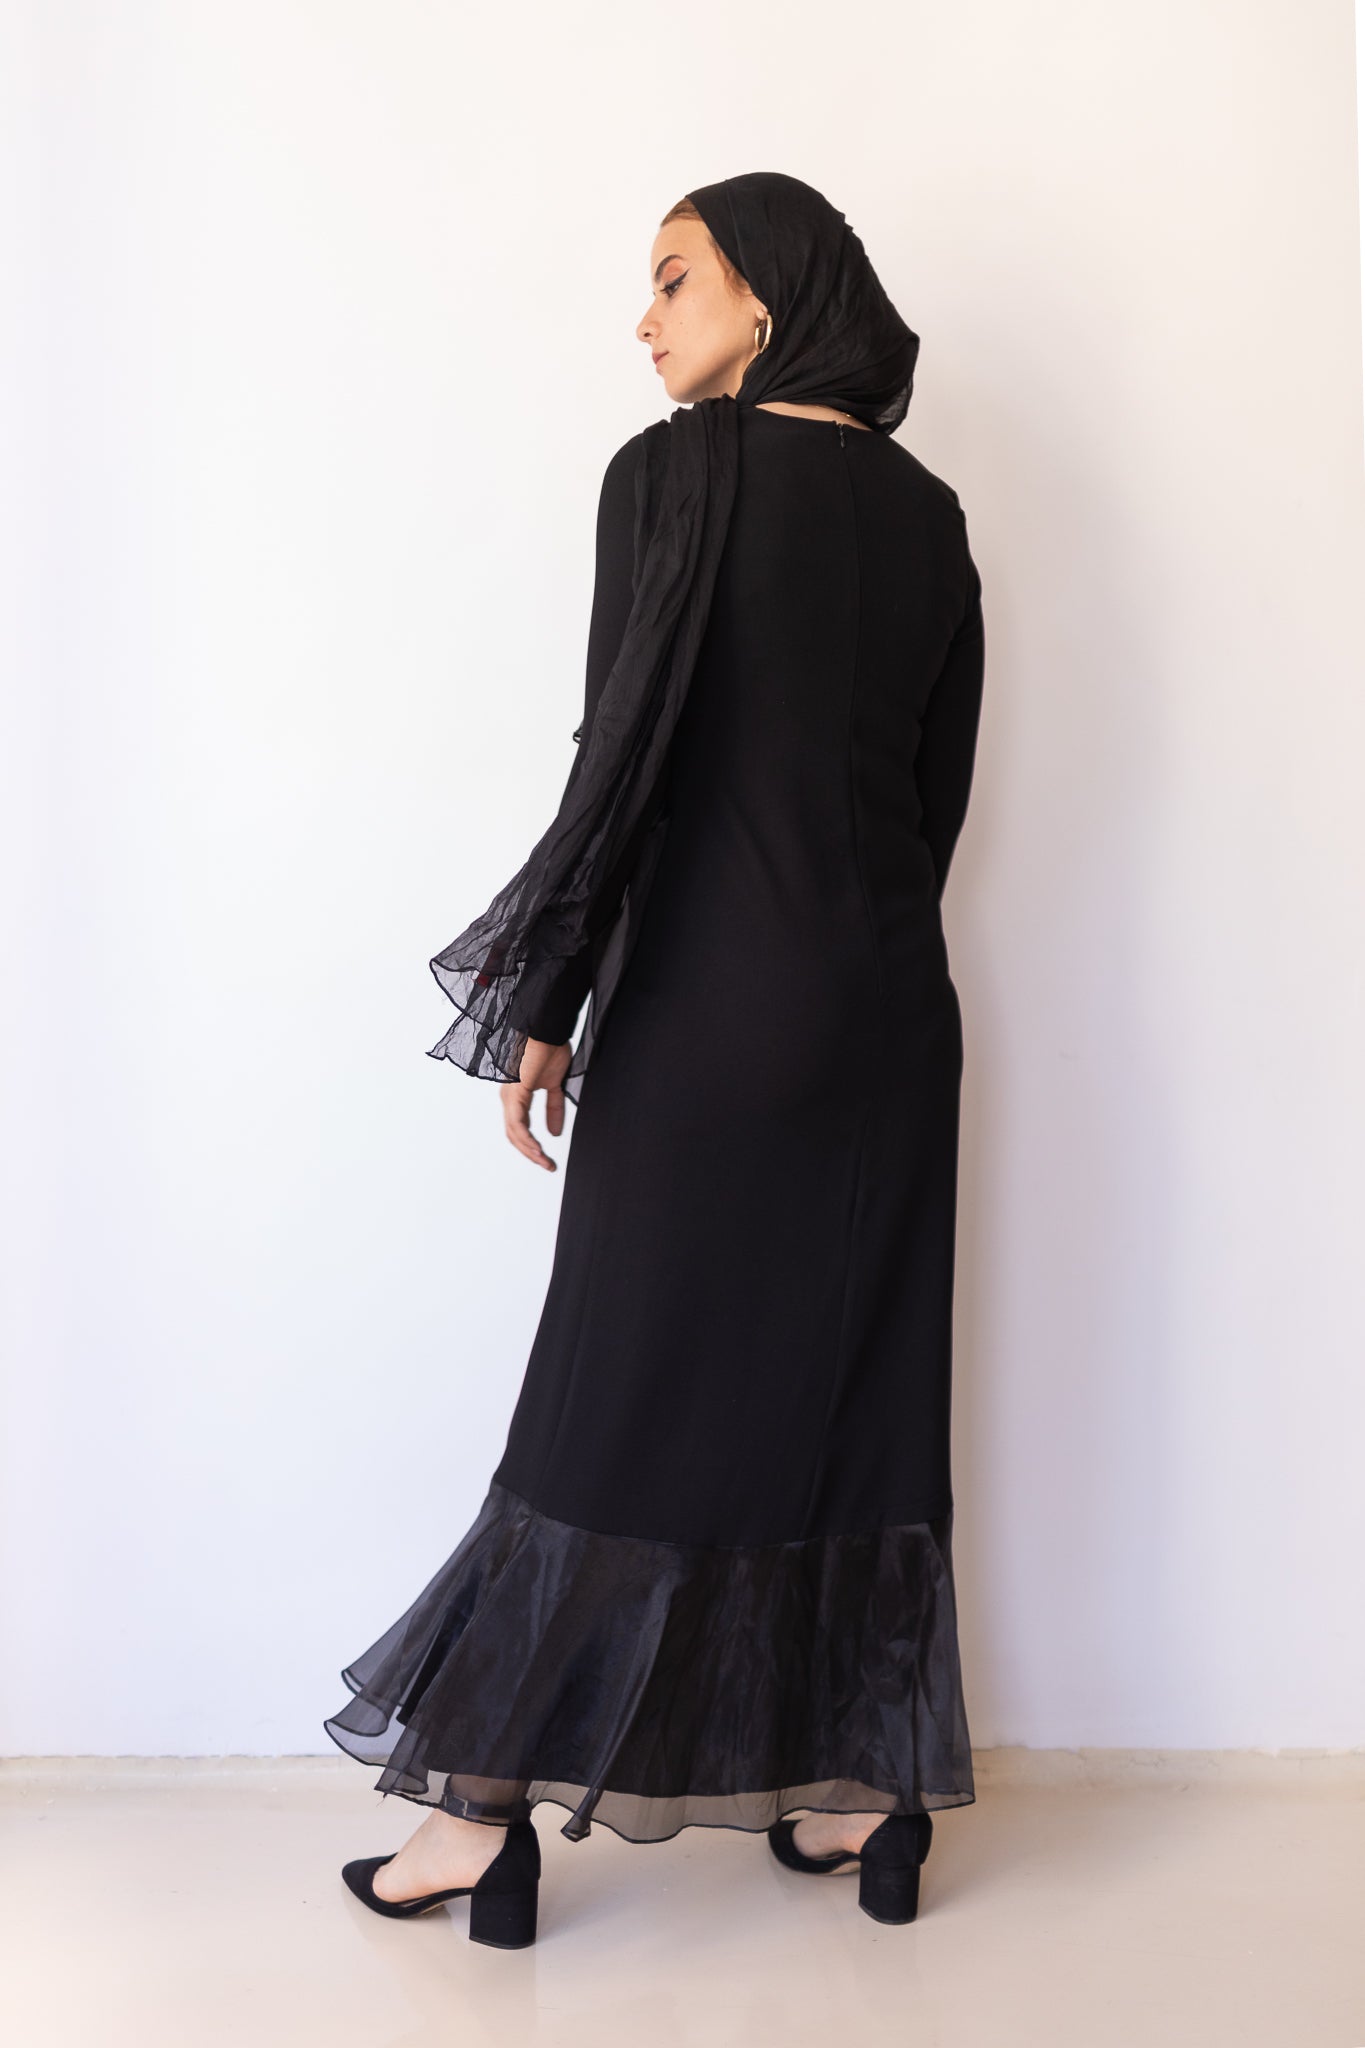 Ruffle Dress in black